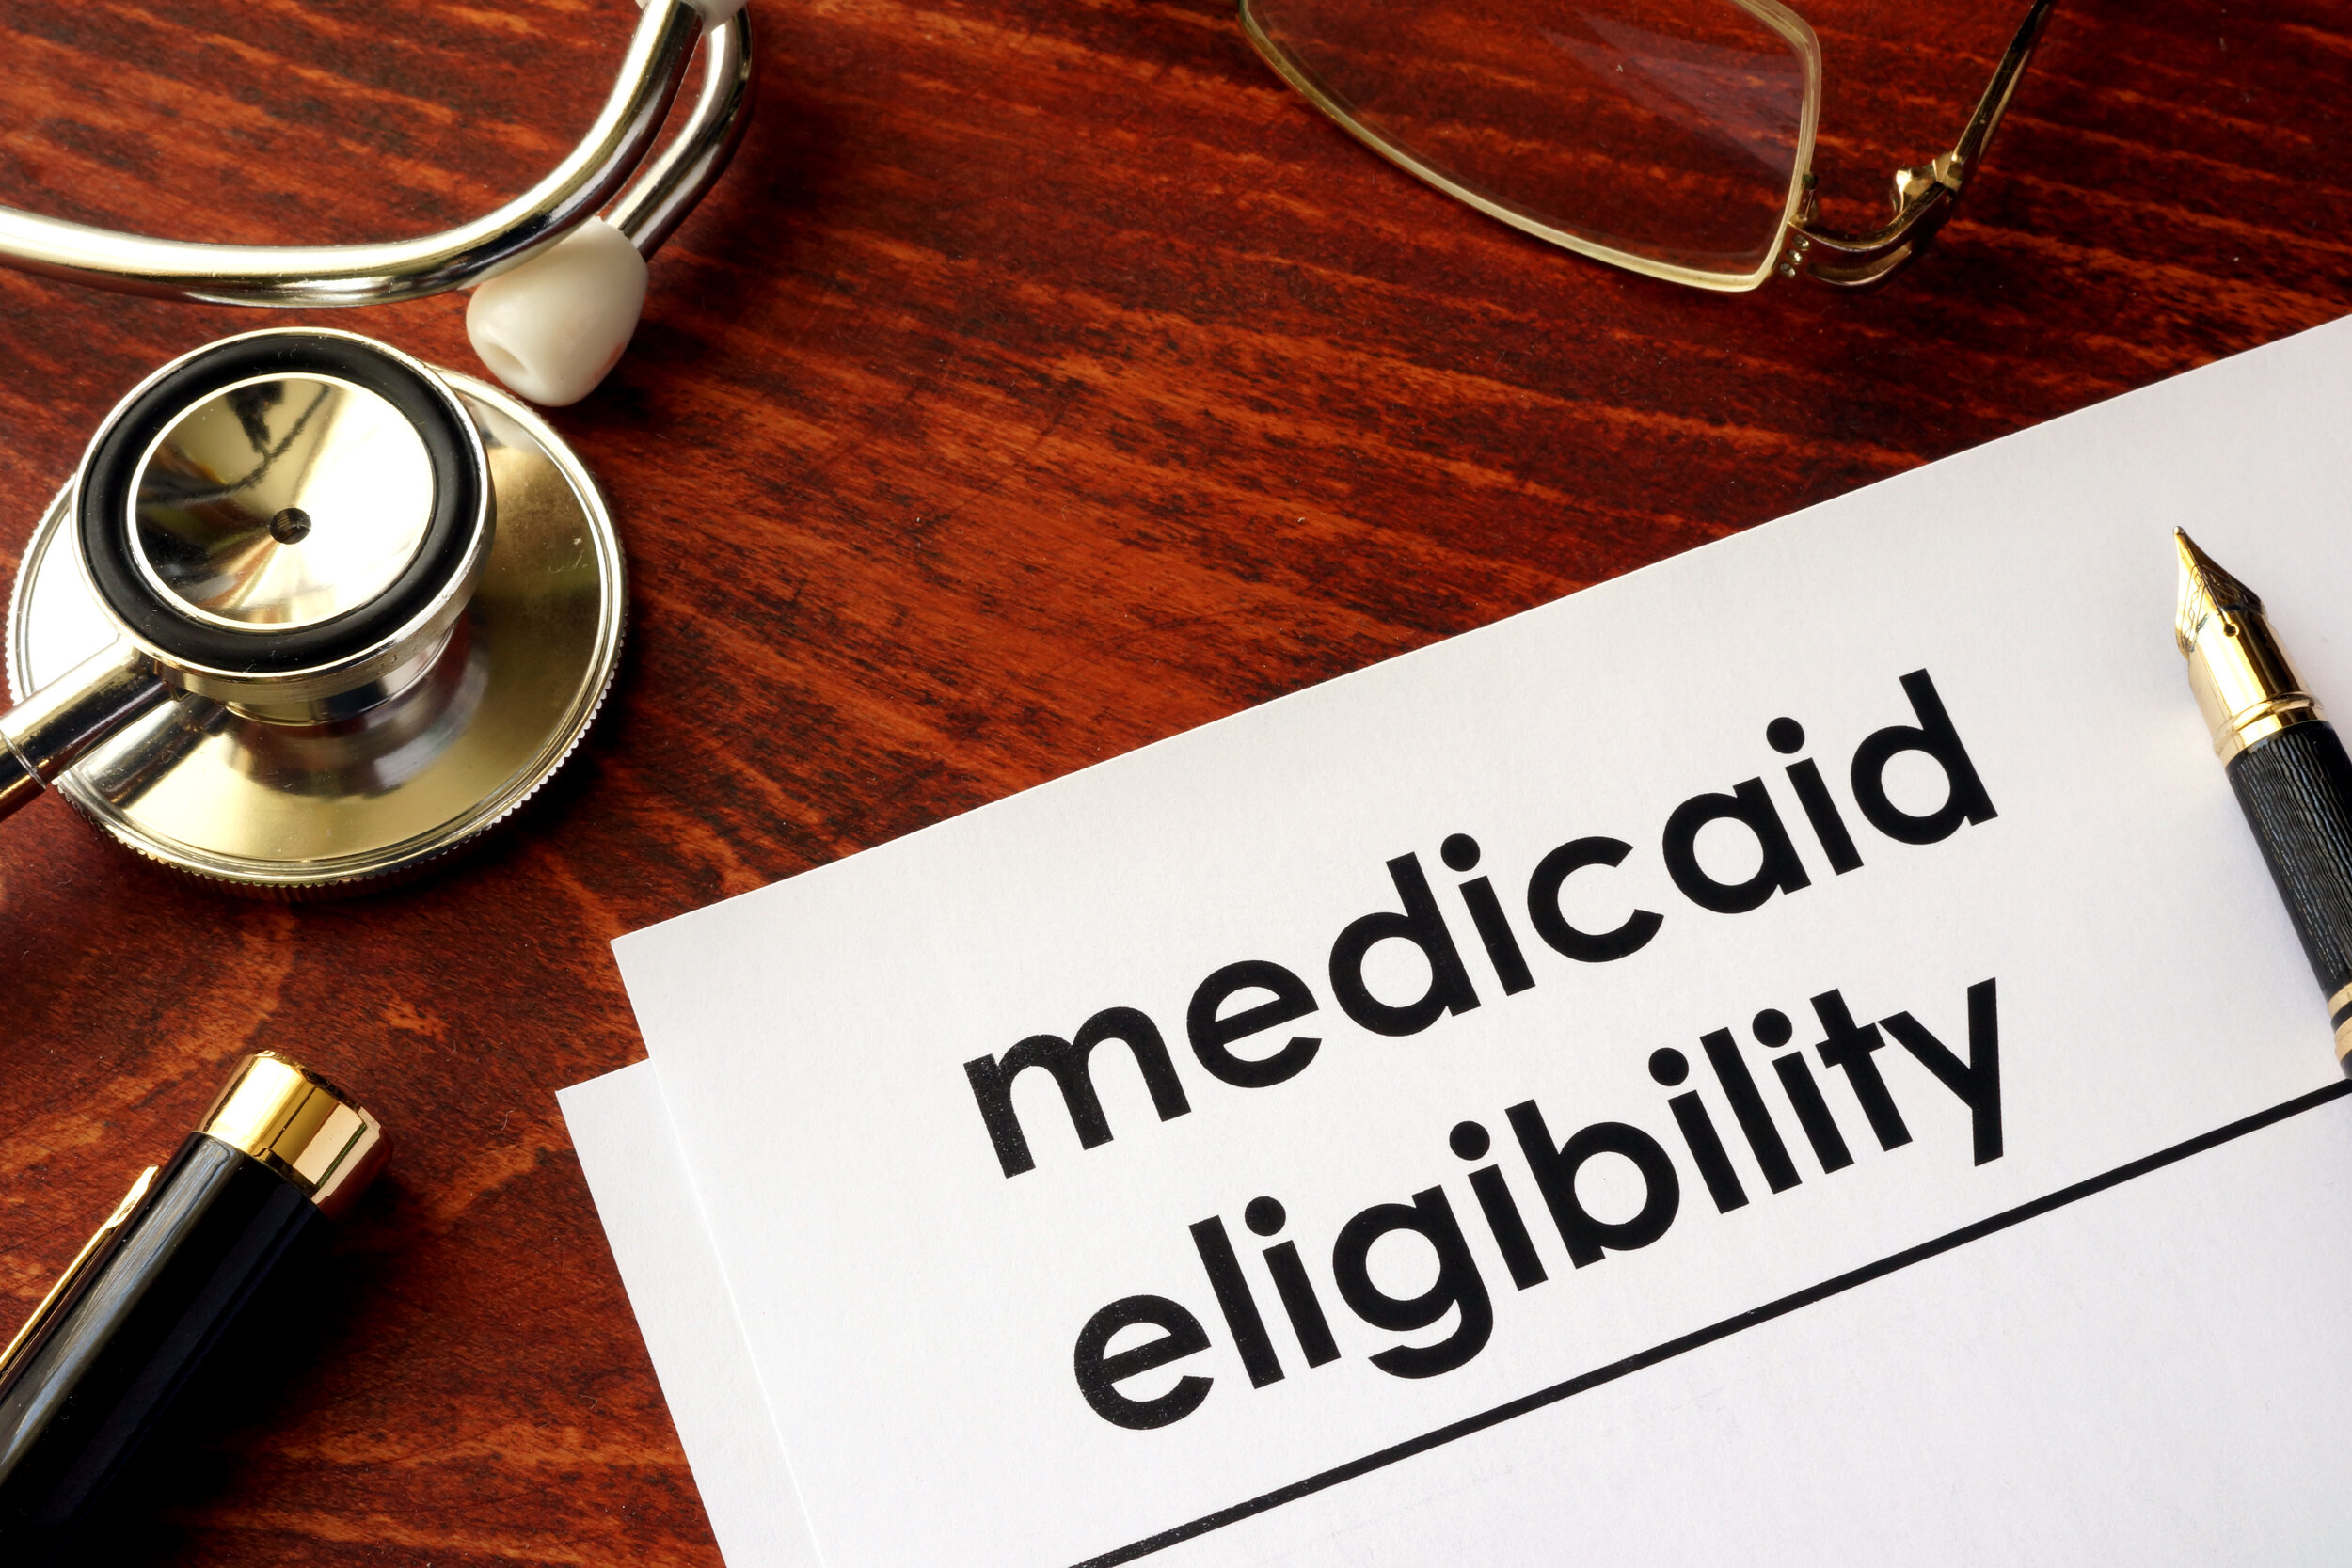 Estetoscopio y gafas sobre una mesa junto a un papel y un bolígrafo que dice "Medicaid Eligibility"